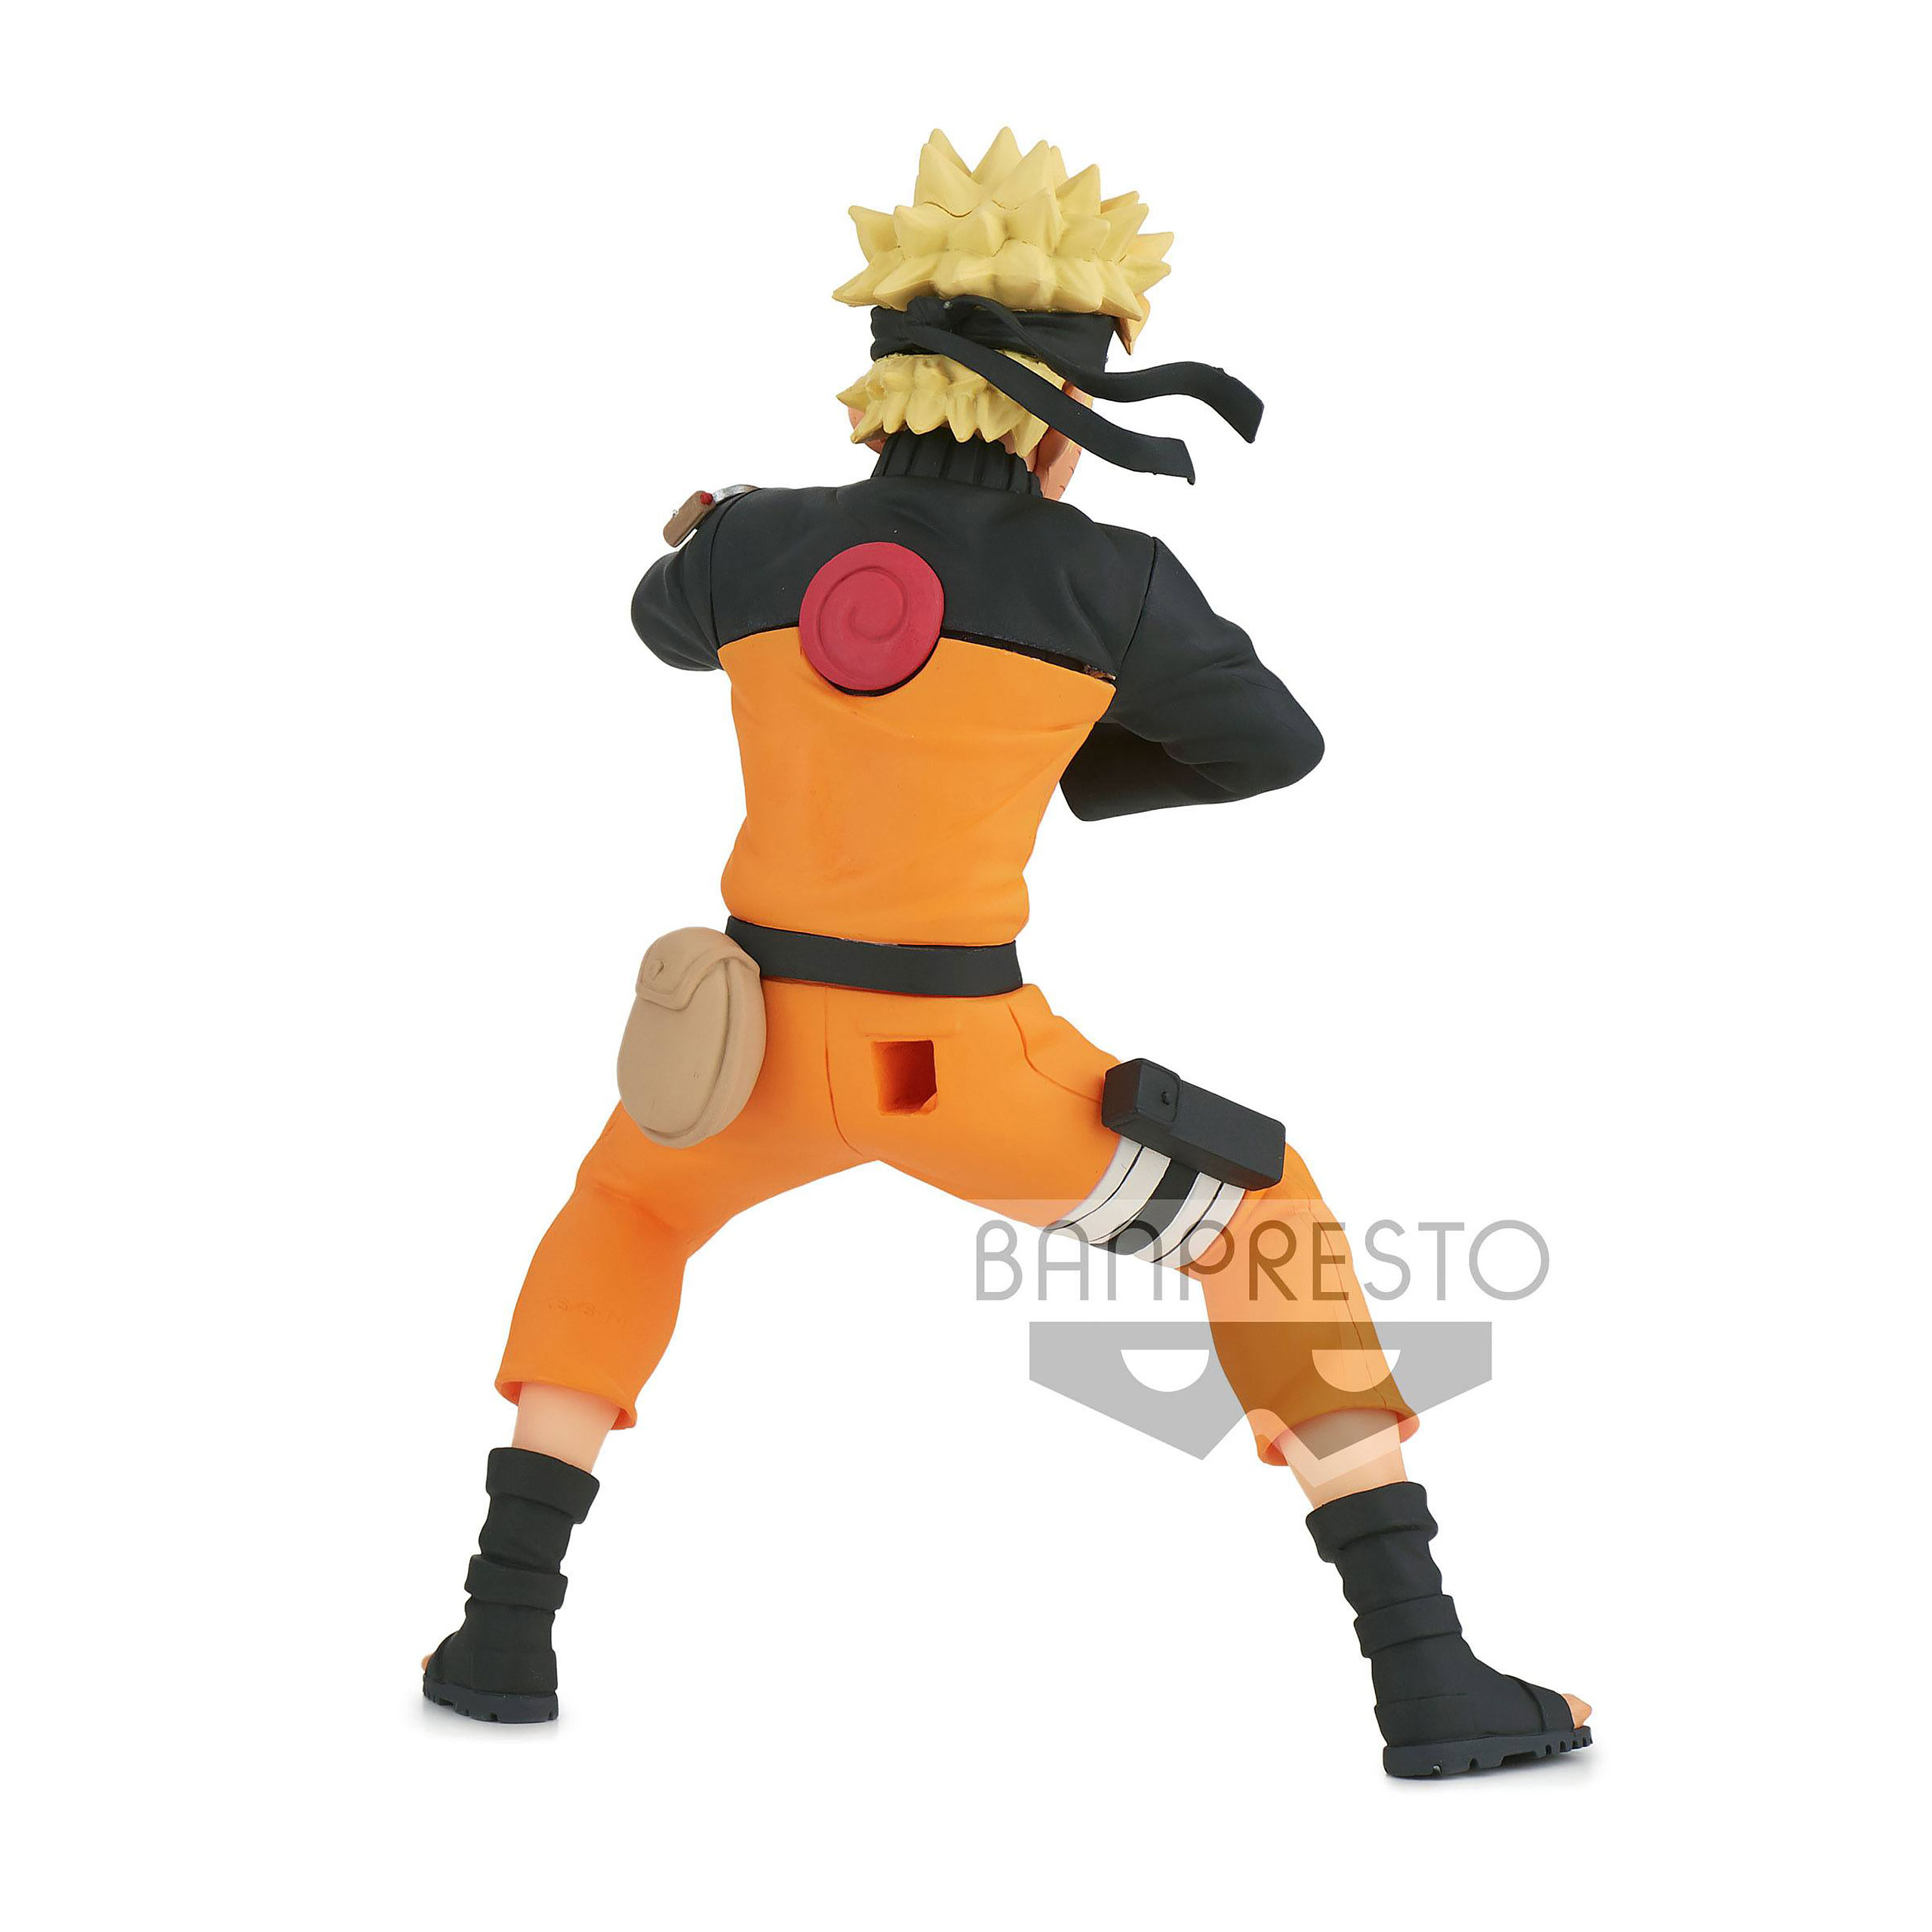 Naruto Shippuden - Naruto Uzumaki Figure 17 cm